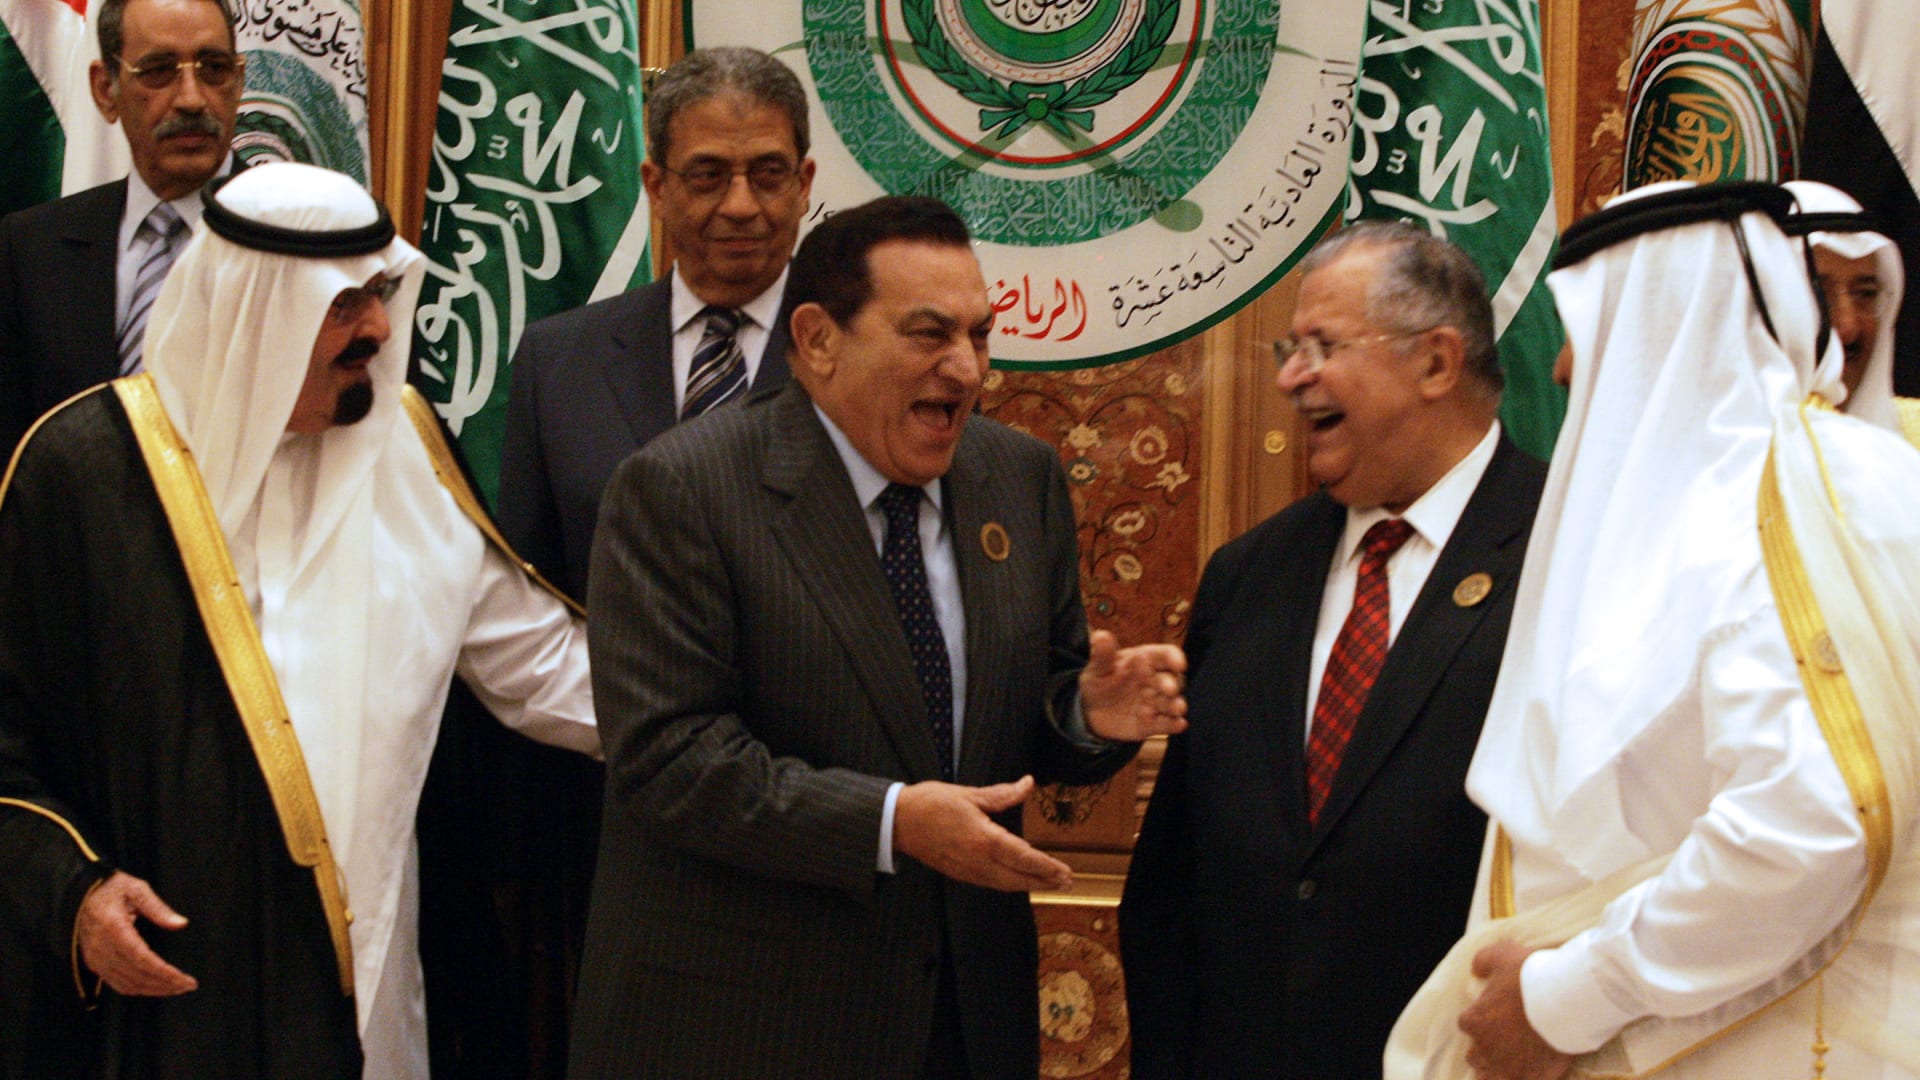 صورة أرشيفية للرئيس المصري مع زعماء خليجيين العام 2007